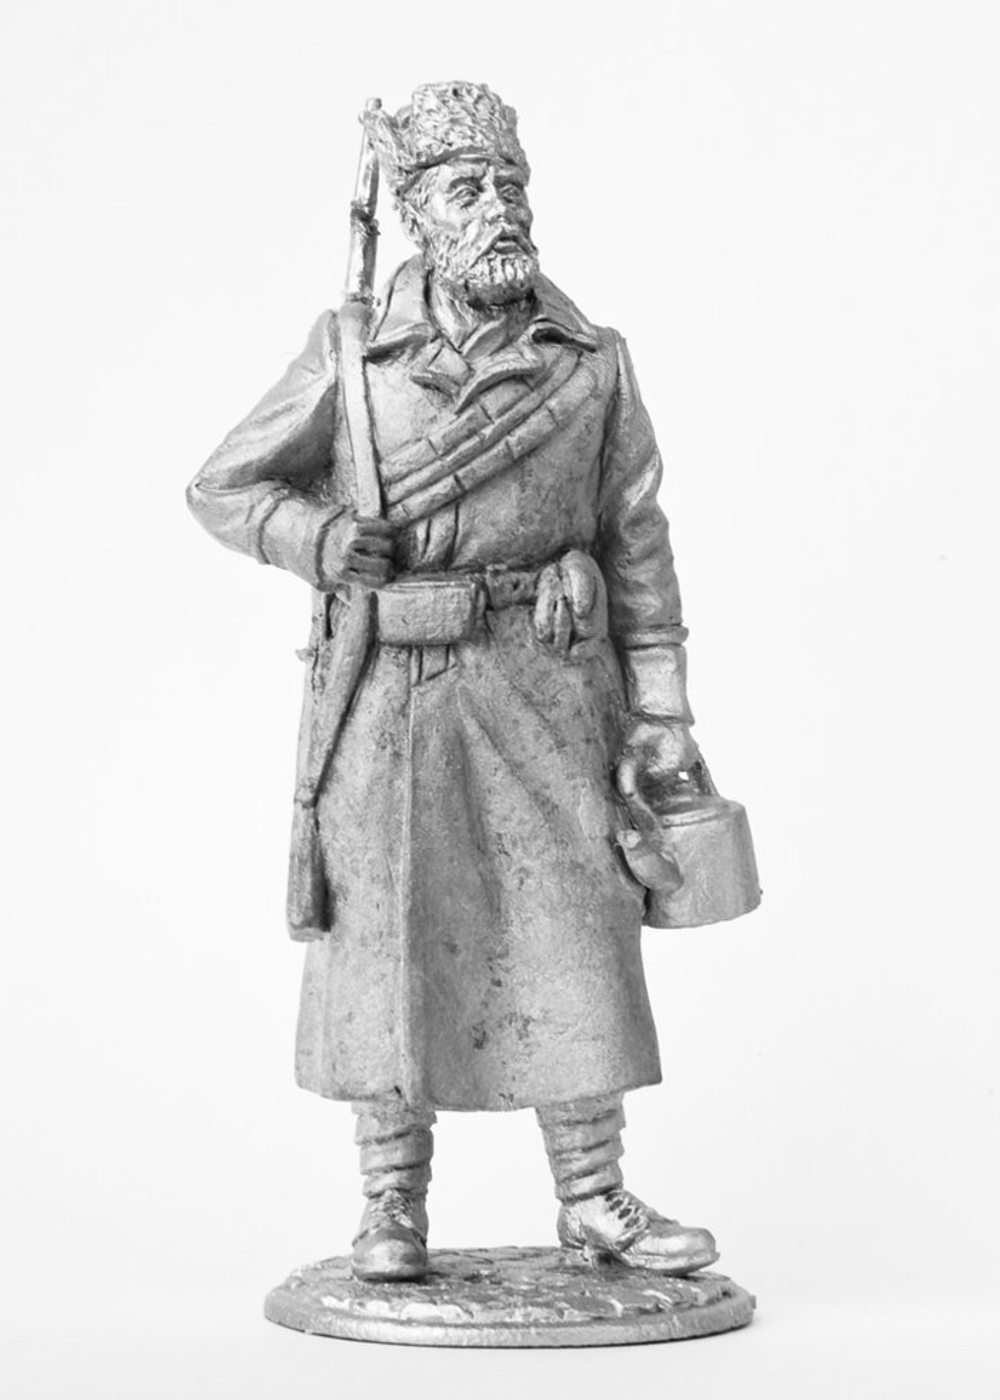 Оловянный солдатик "Человек с ружьем", 1917 г.